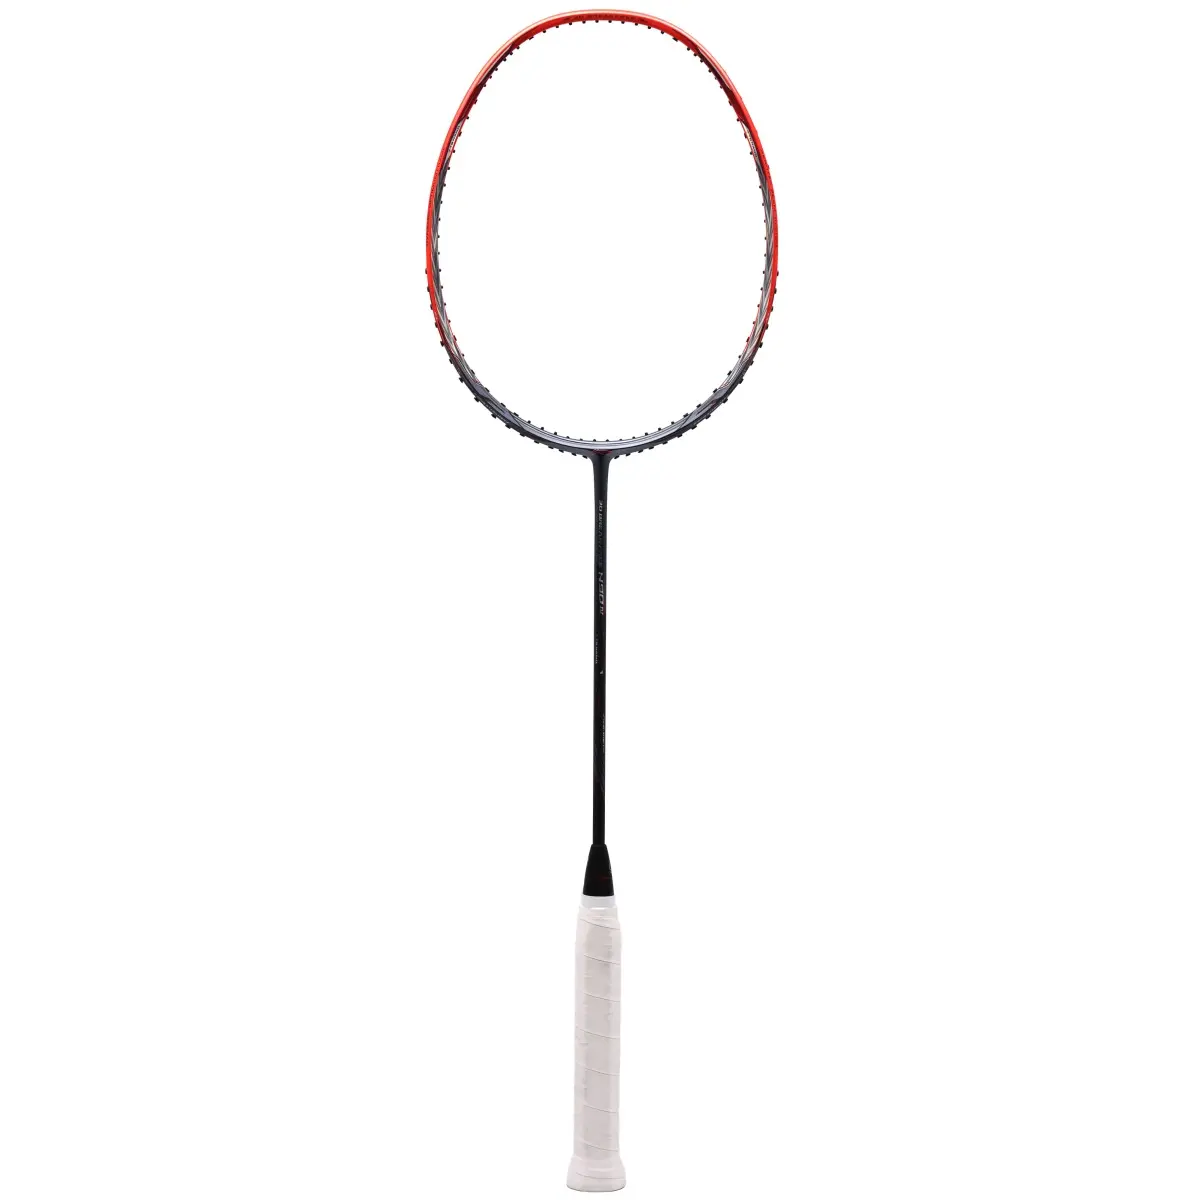 Buy Lining N90 IV Badminton Racket